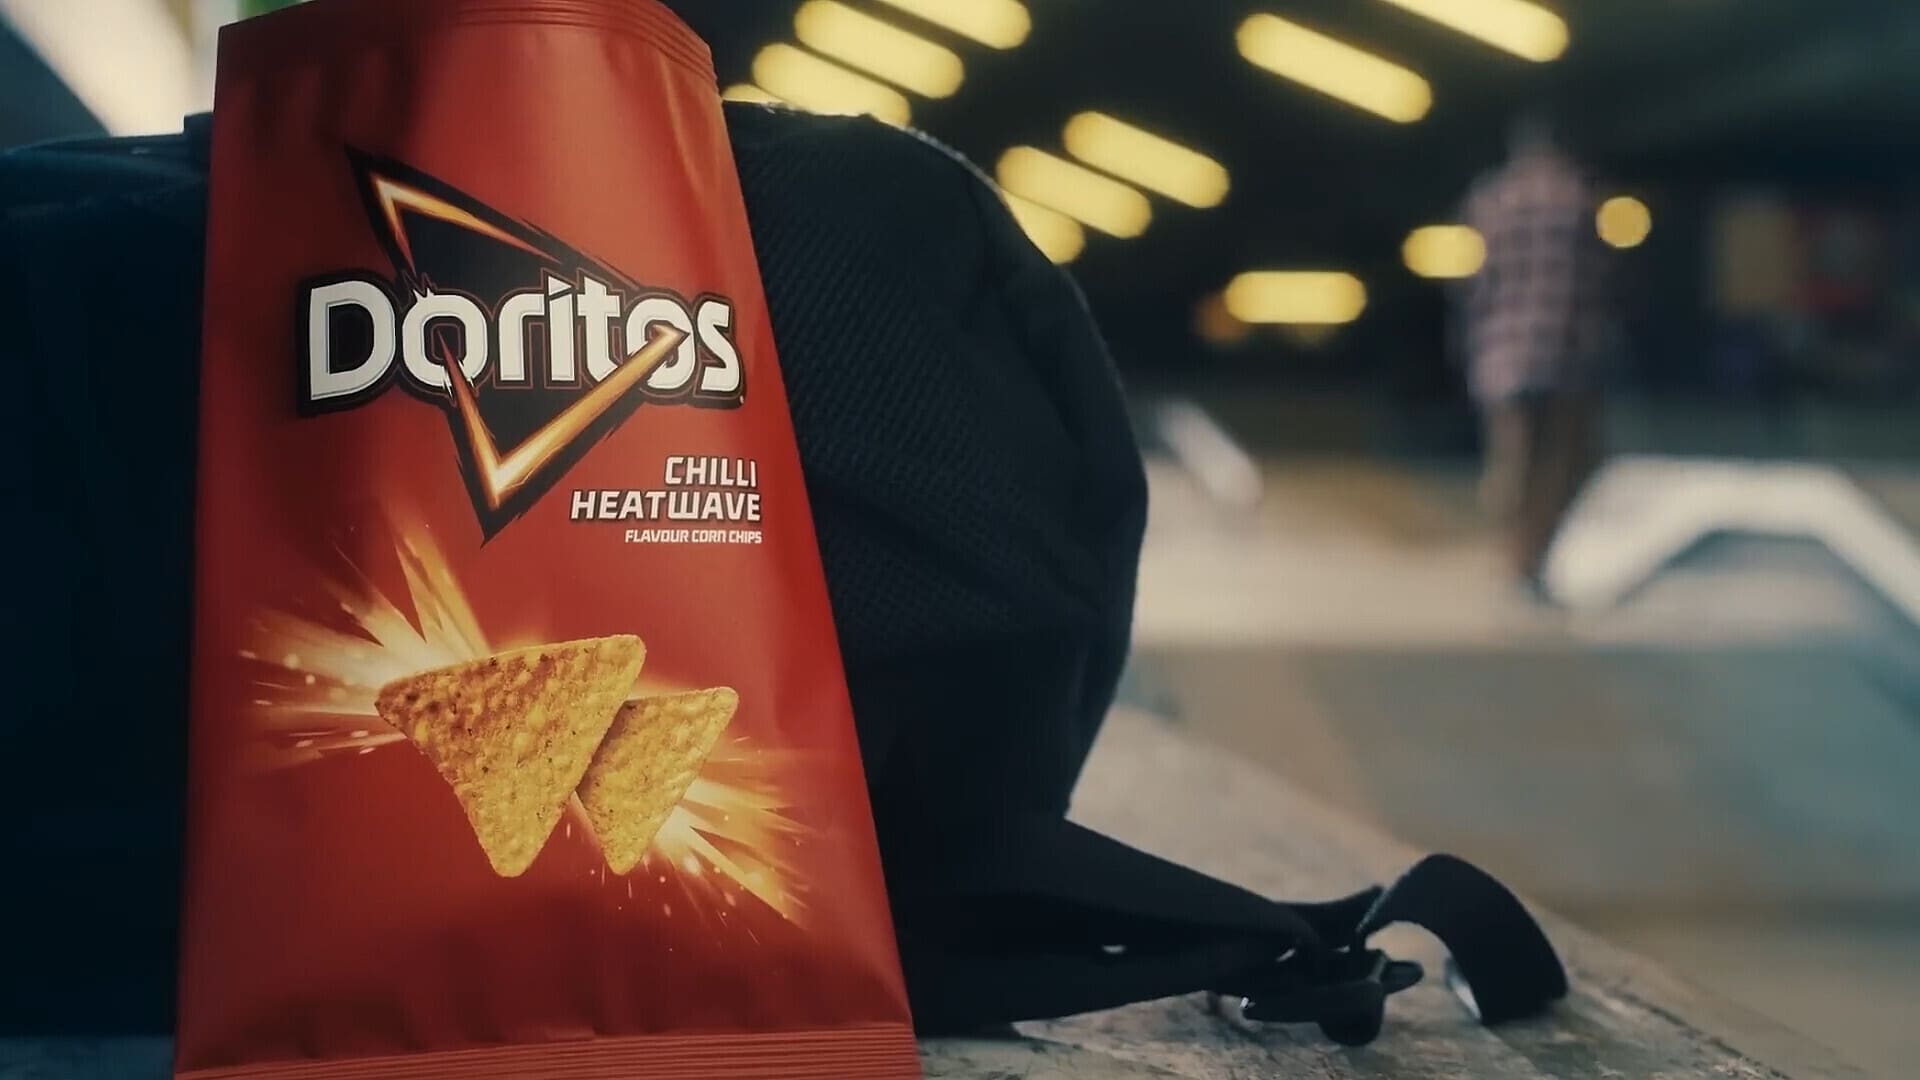 Doritos: For The Bold In Everyone | Doritos UK